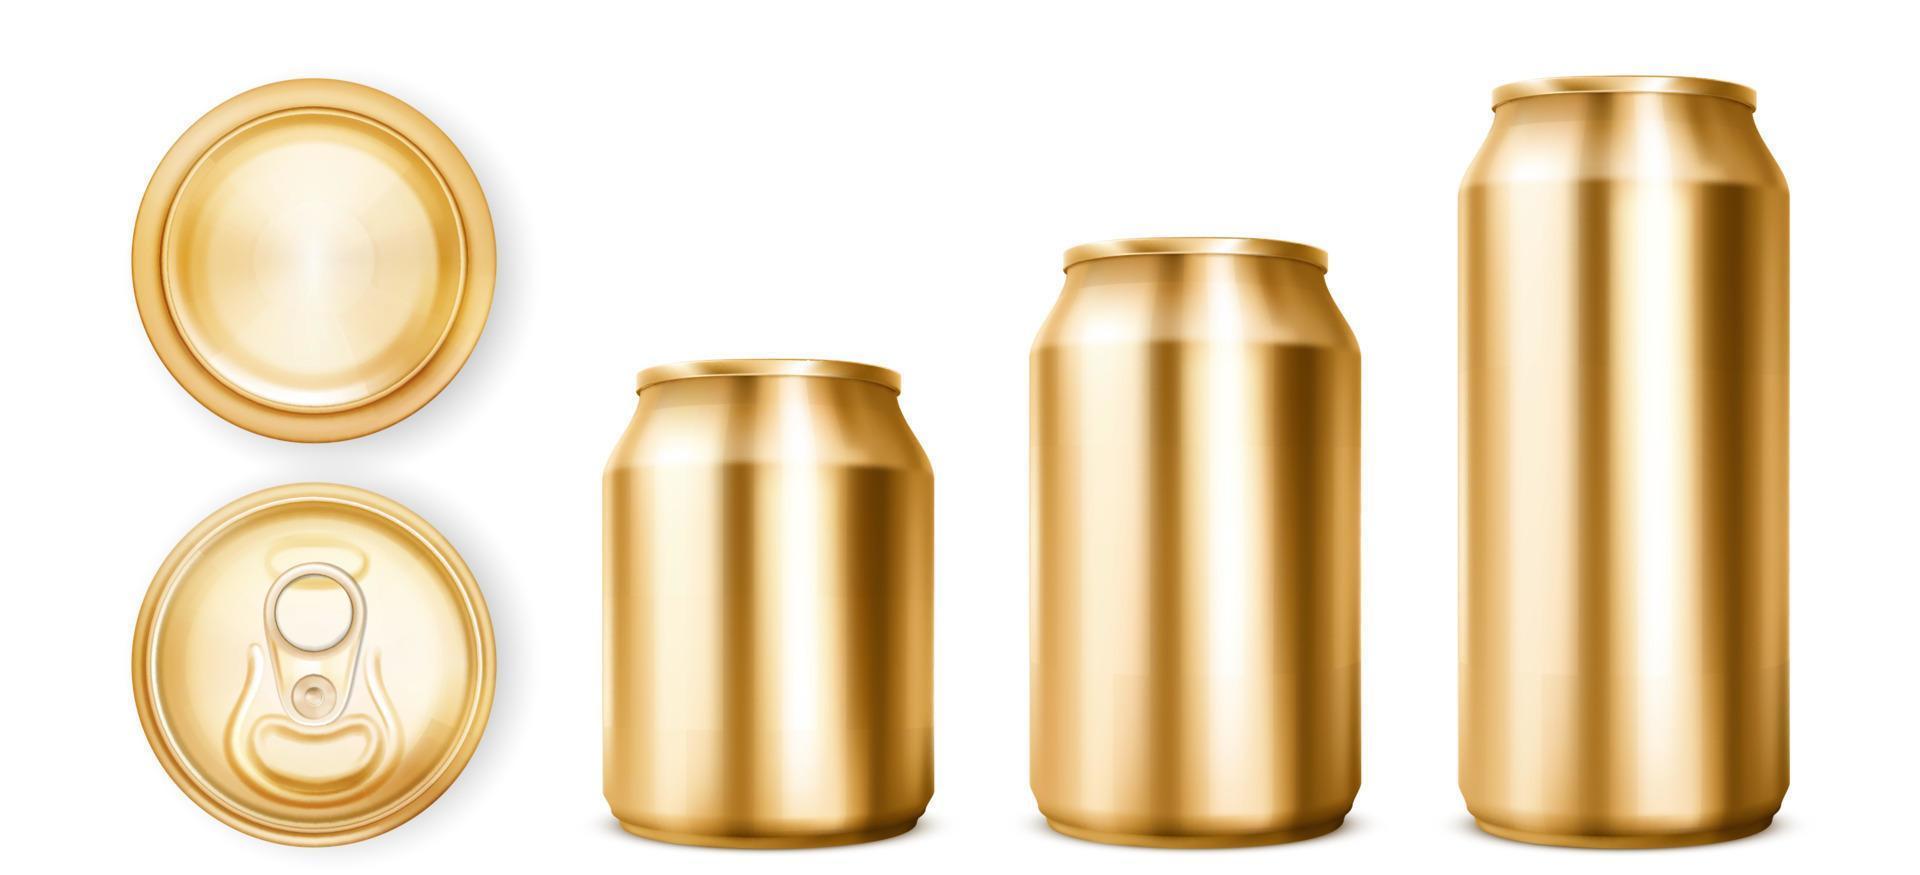 Goldblechdosen für Limonade oder Bier in verschiedenen Ansichten vektor